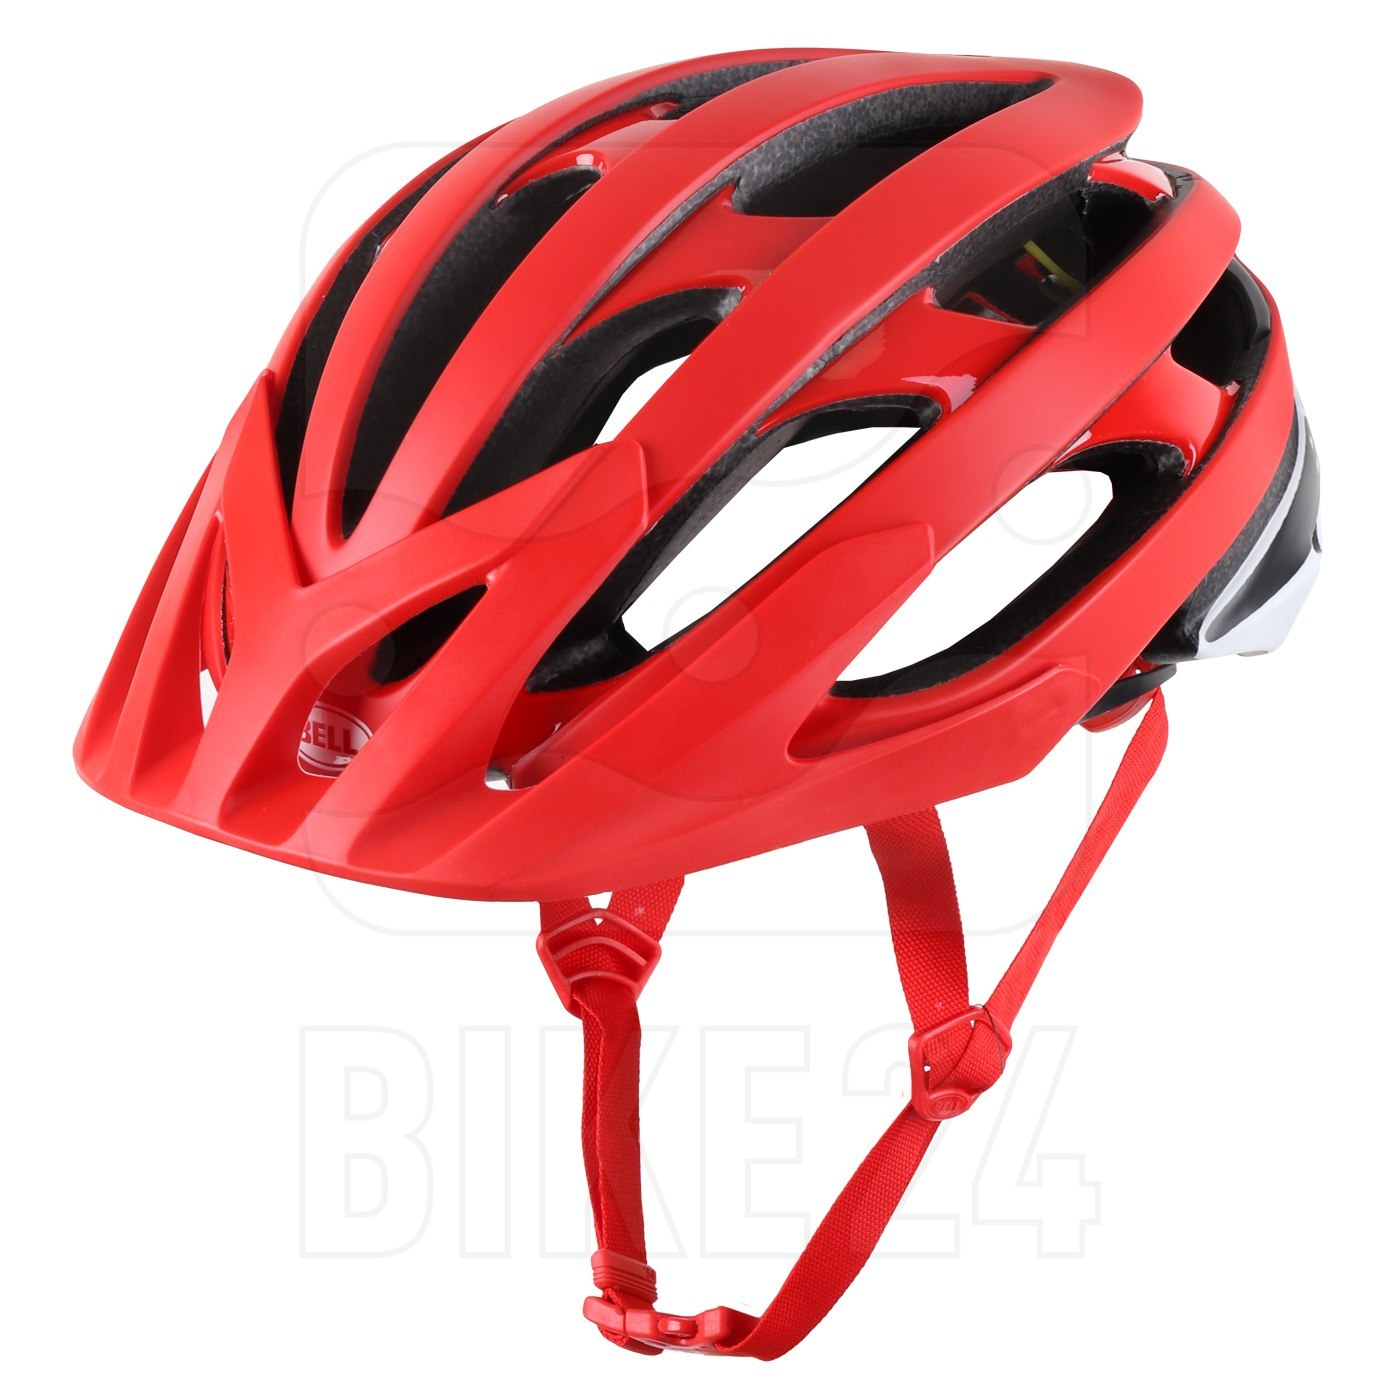 Produktbild von Bell Catalyst MIPS Helm - matte/gloss red/black